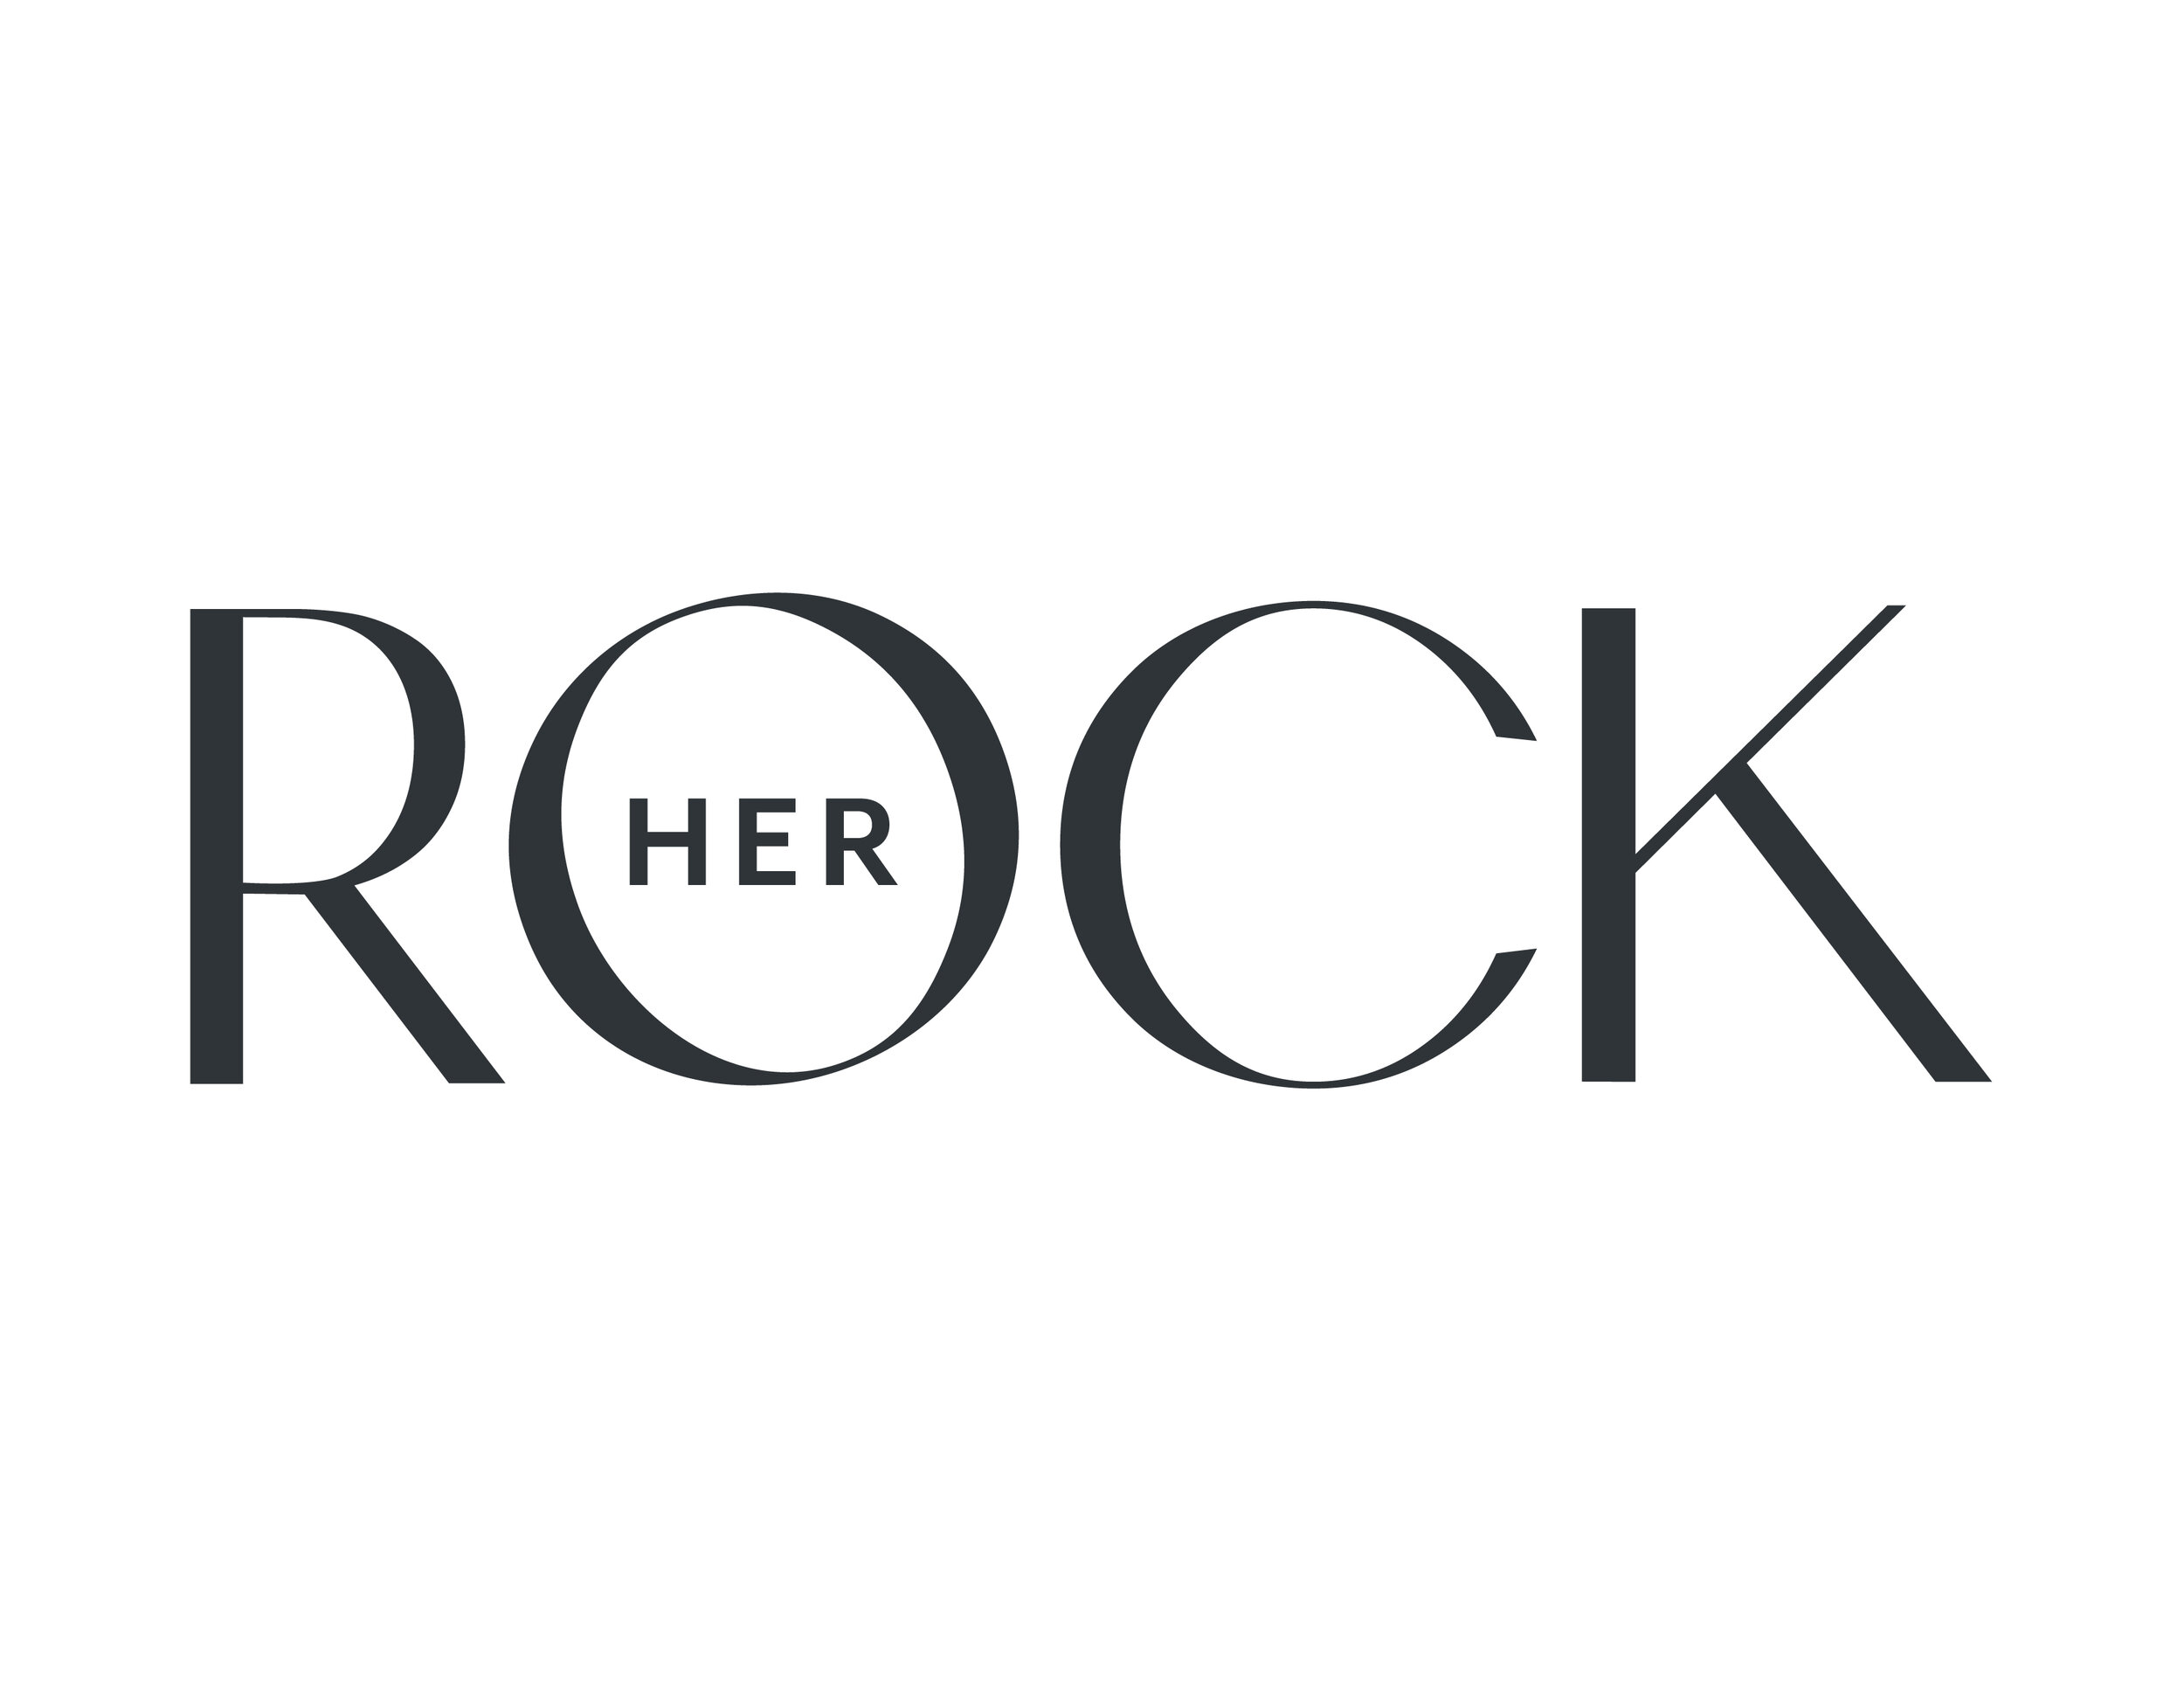 HerRock_Logo_charcoal.jpg